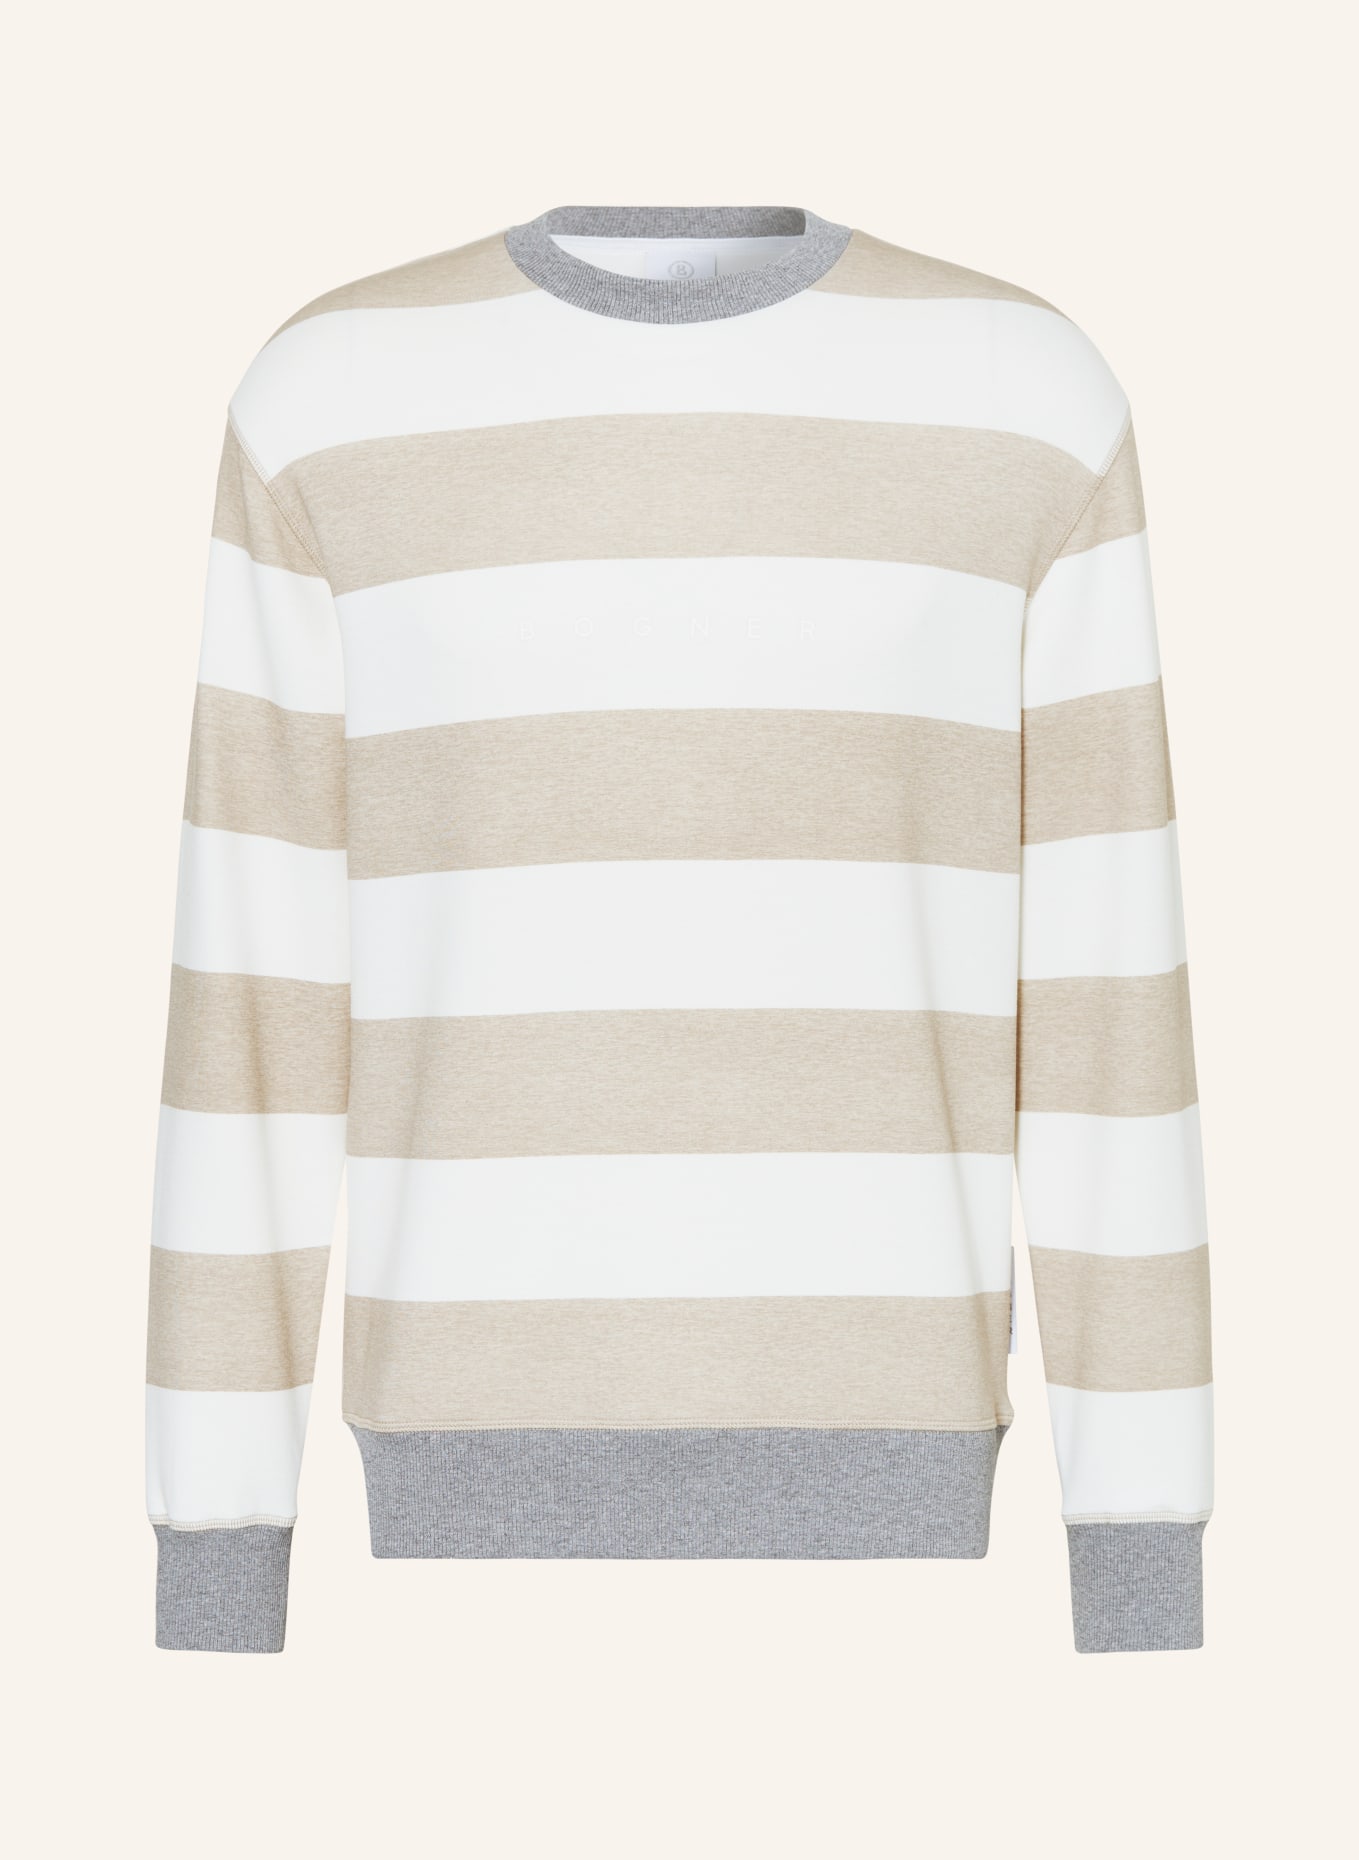 BOGNER Sweatshirt HANJO, Farbe: CREME/ BEIGE (Bild 1)